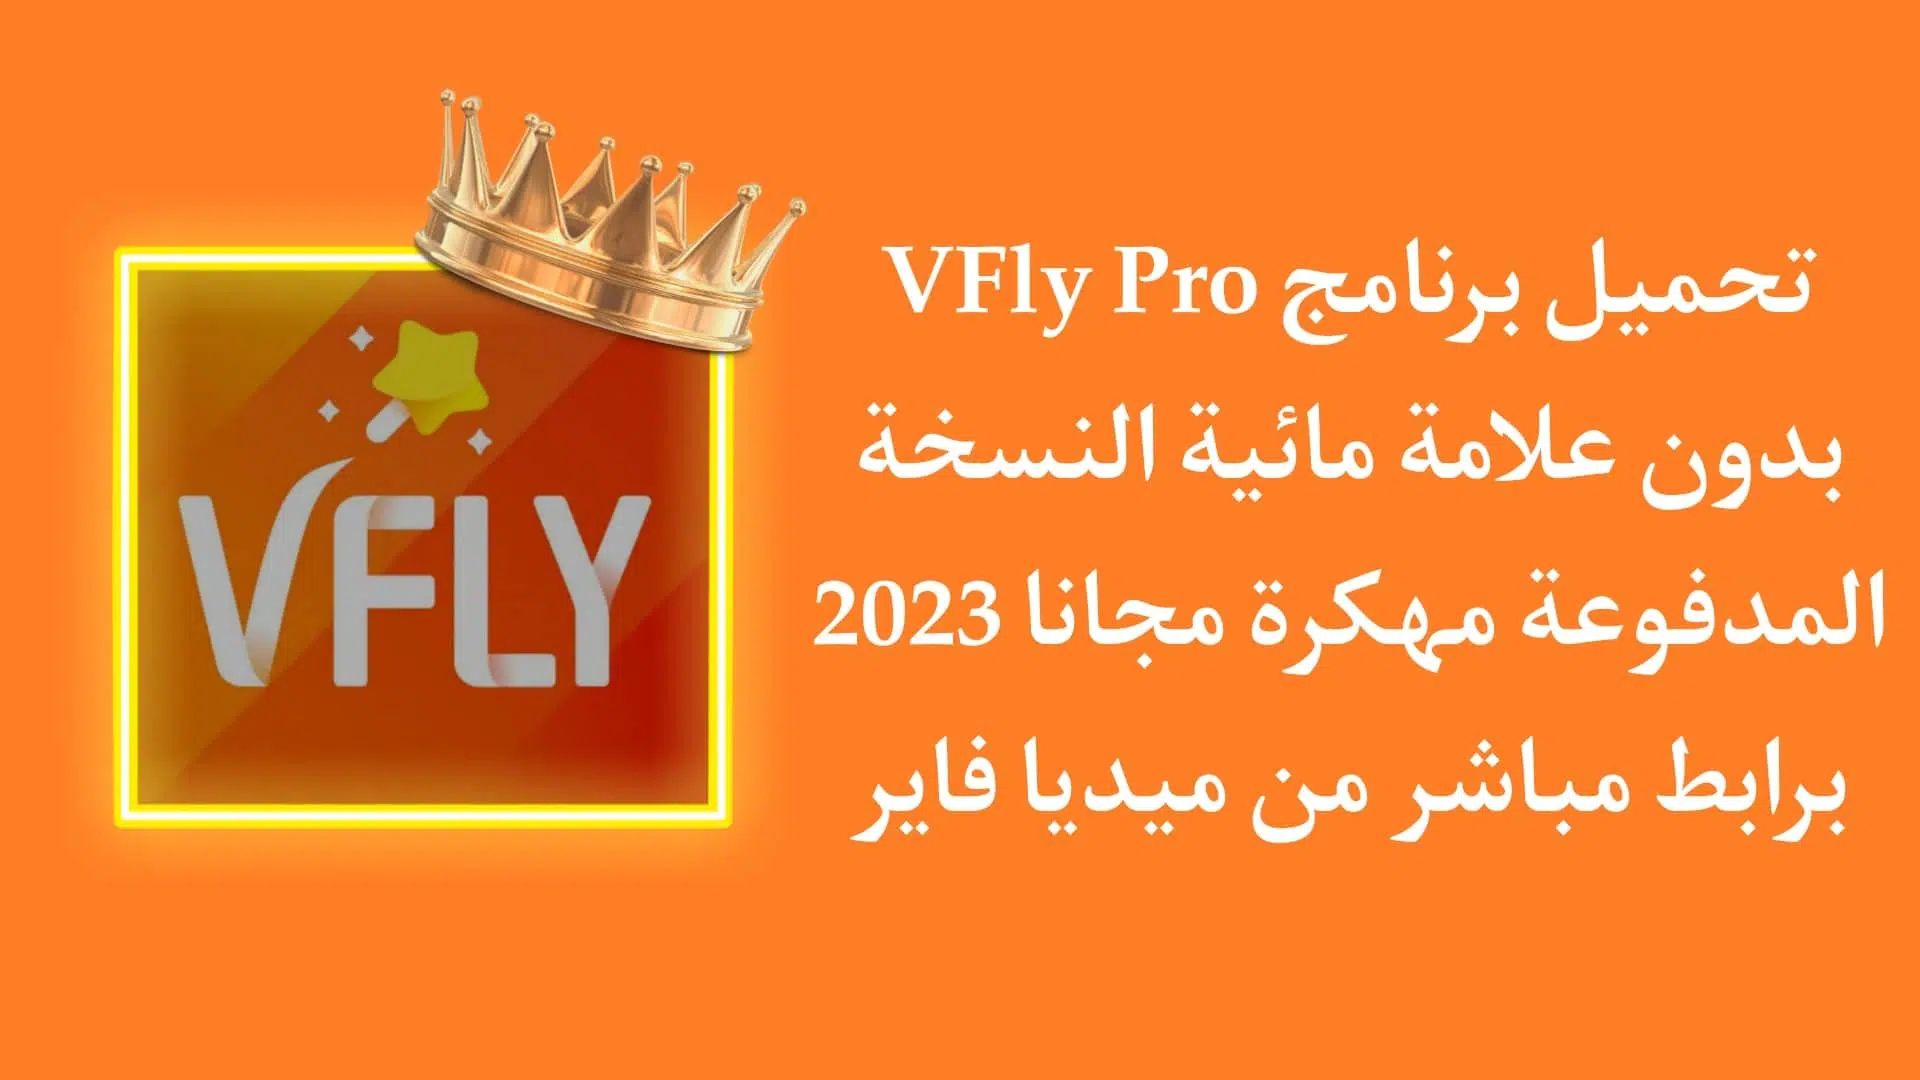 تحميل برنامج VFly Pro بدون علامة مائية مهكر اخر اصدار 2022